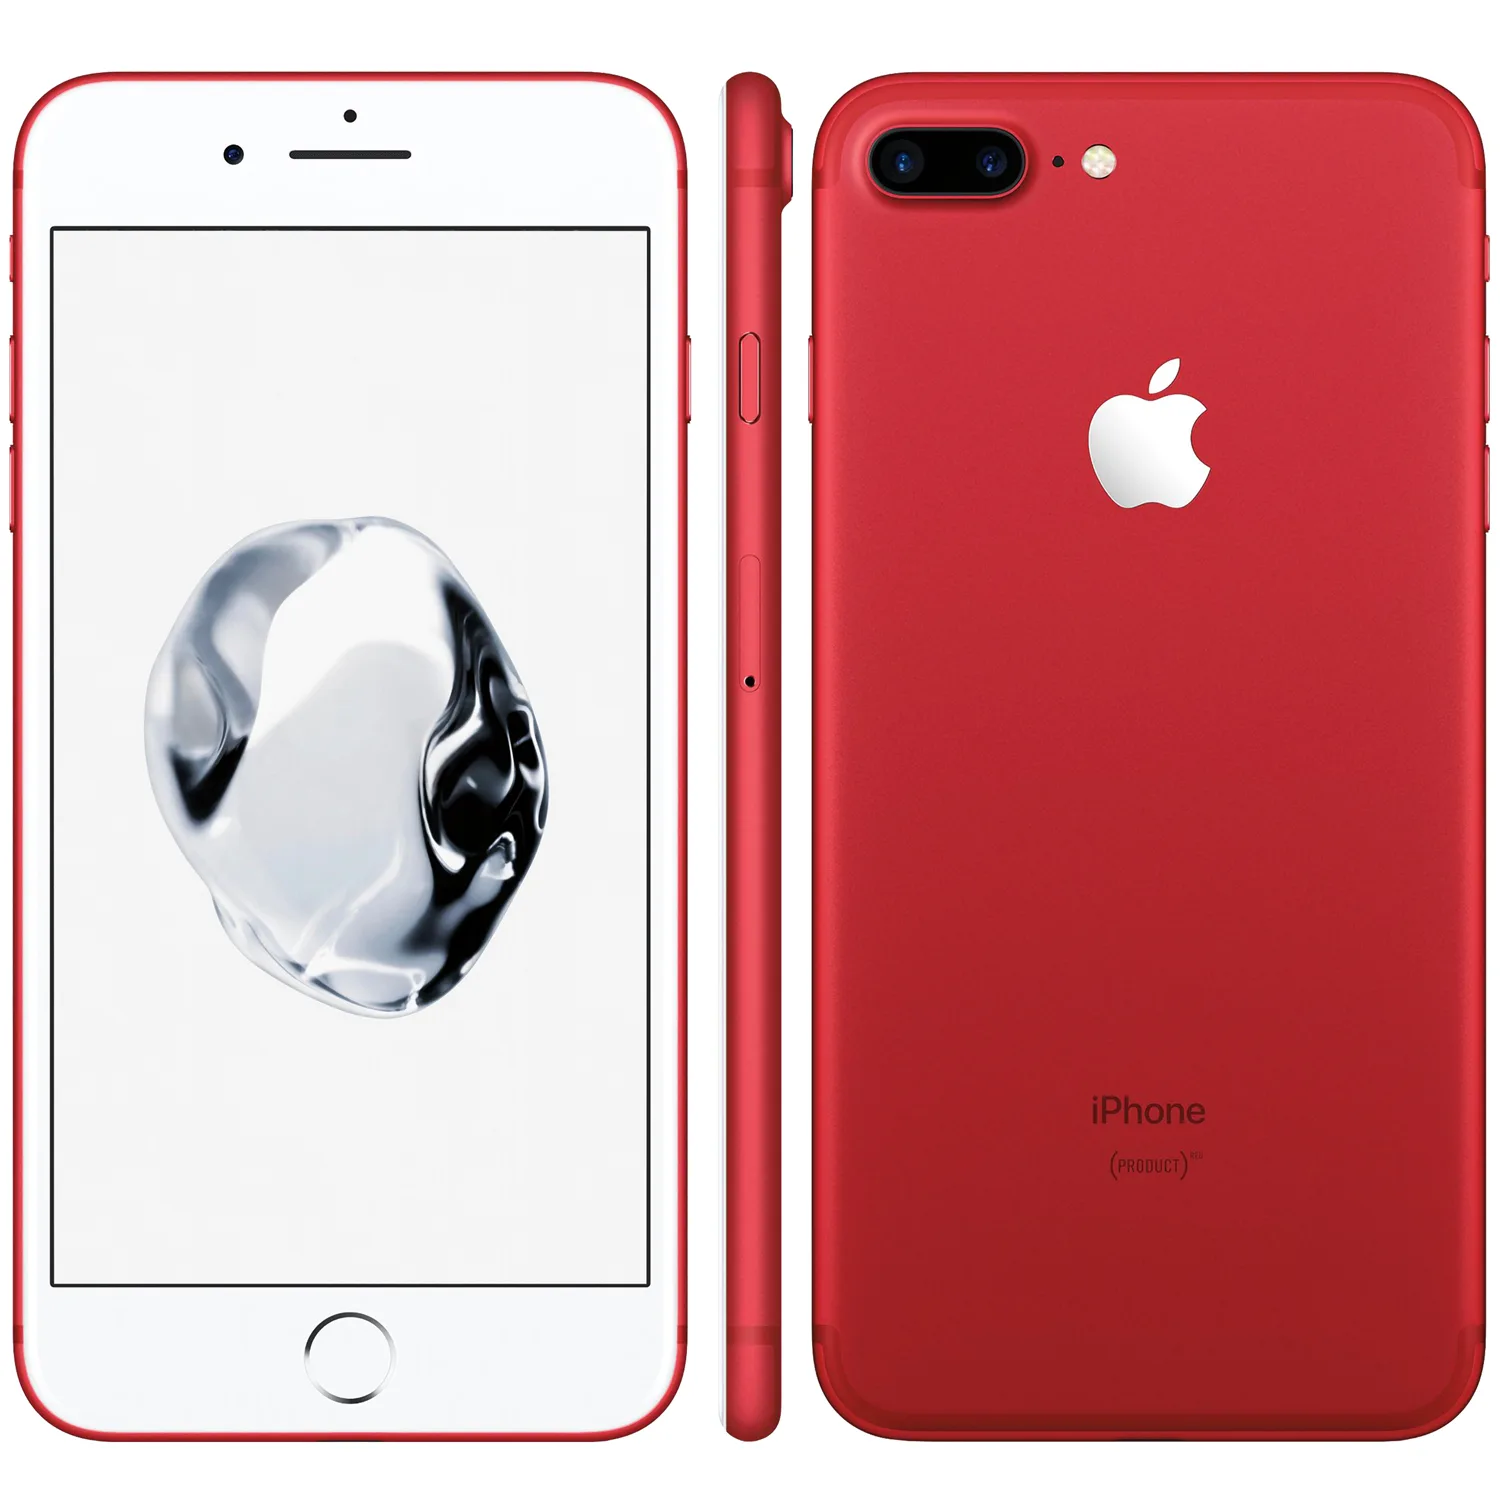 Tub sirene Riskeren iPhone 7 Plus 128GB rood kopen? - 2 jaar garantie! | Fixje